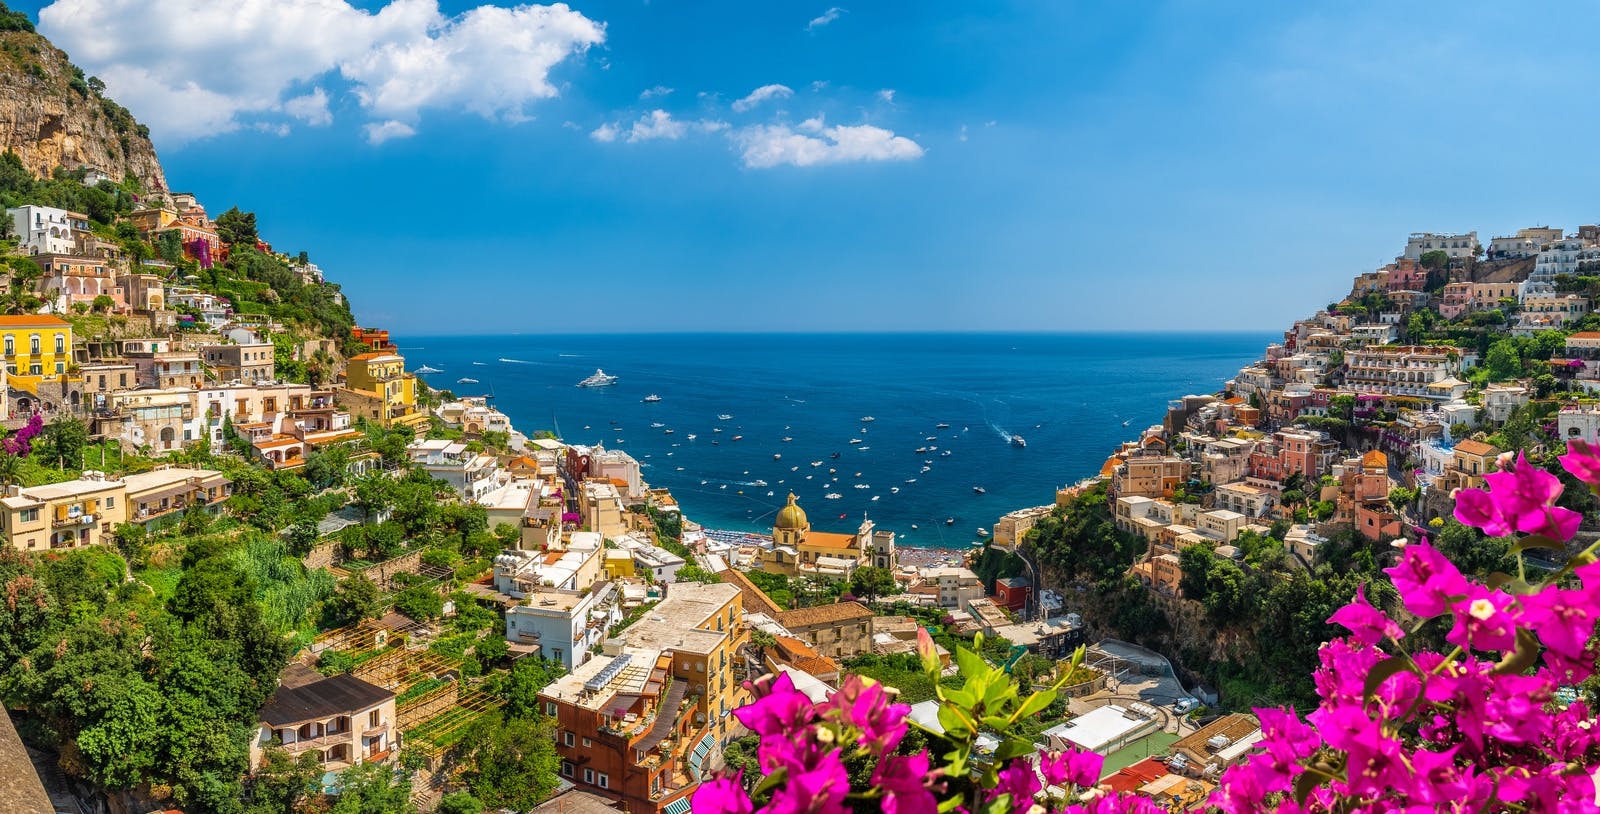 Excursión en autobús de día completo por la costa de Amalfi desde Nápoles